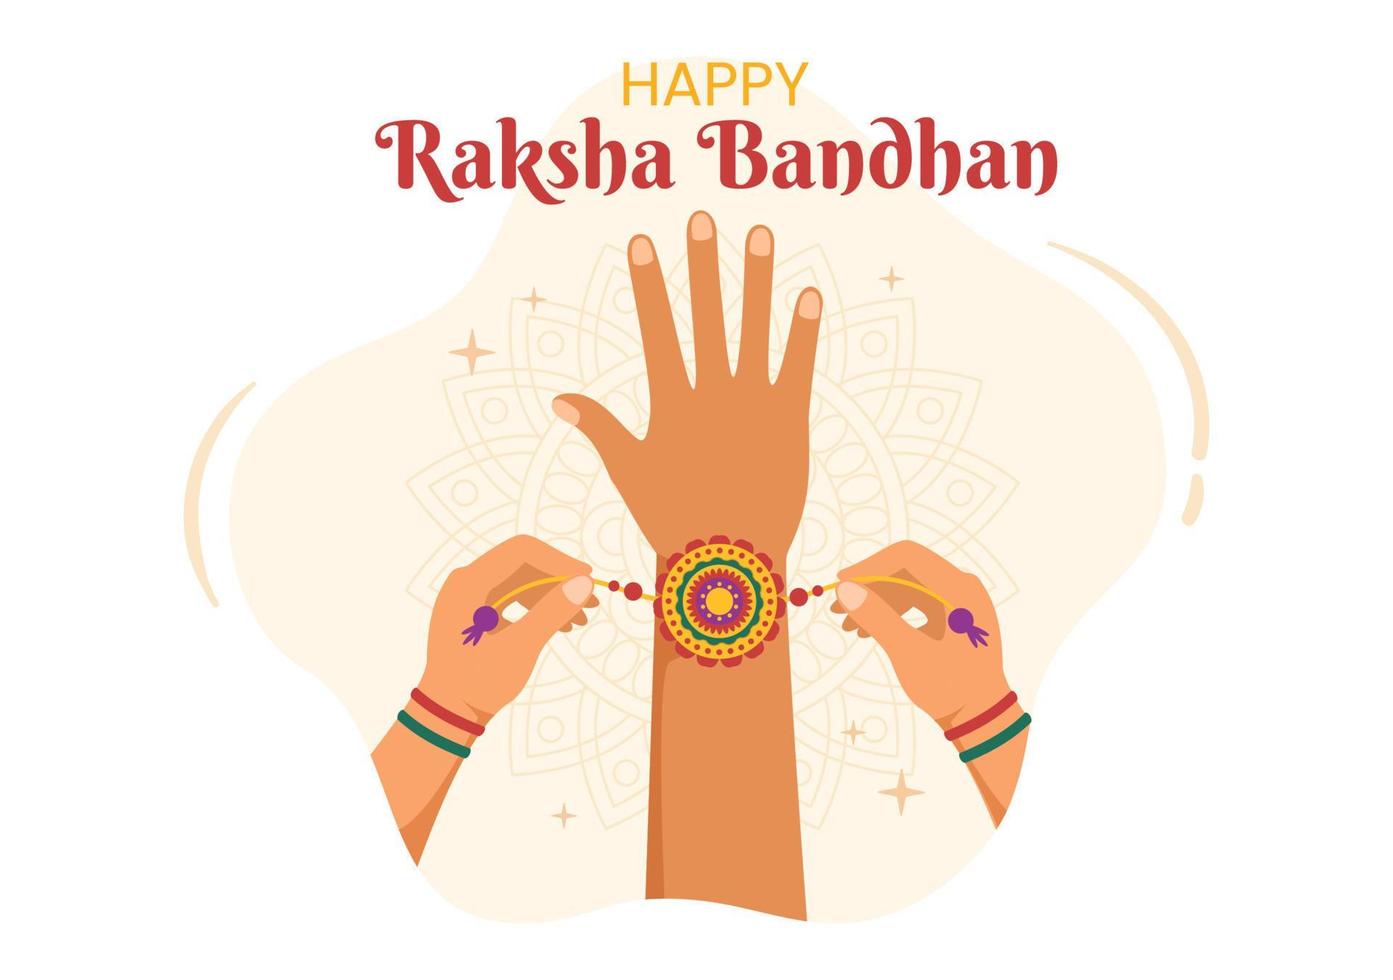 gelukkige raksha bandhan cartoon afbeelding met zus die rakhi om de pols van haar broers bindt om de band van liefde in de viering van het Indiase festival aan te duiden vector